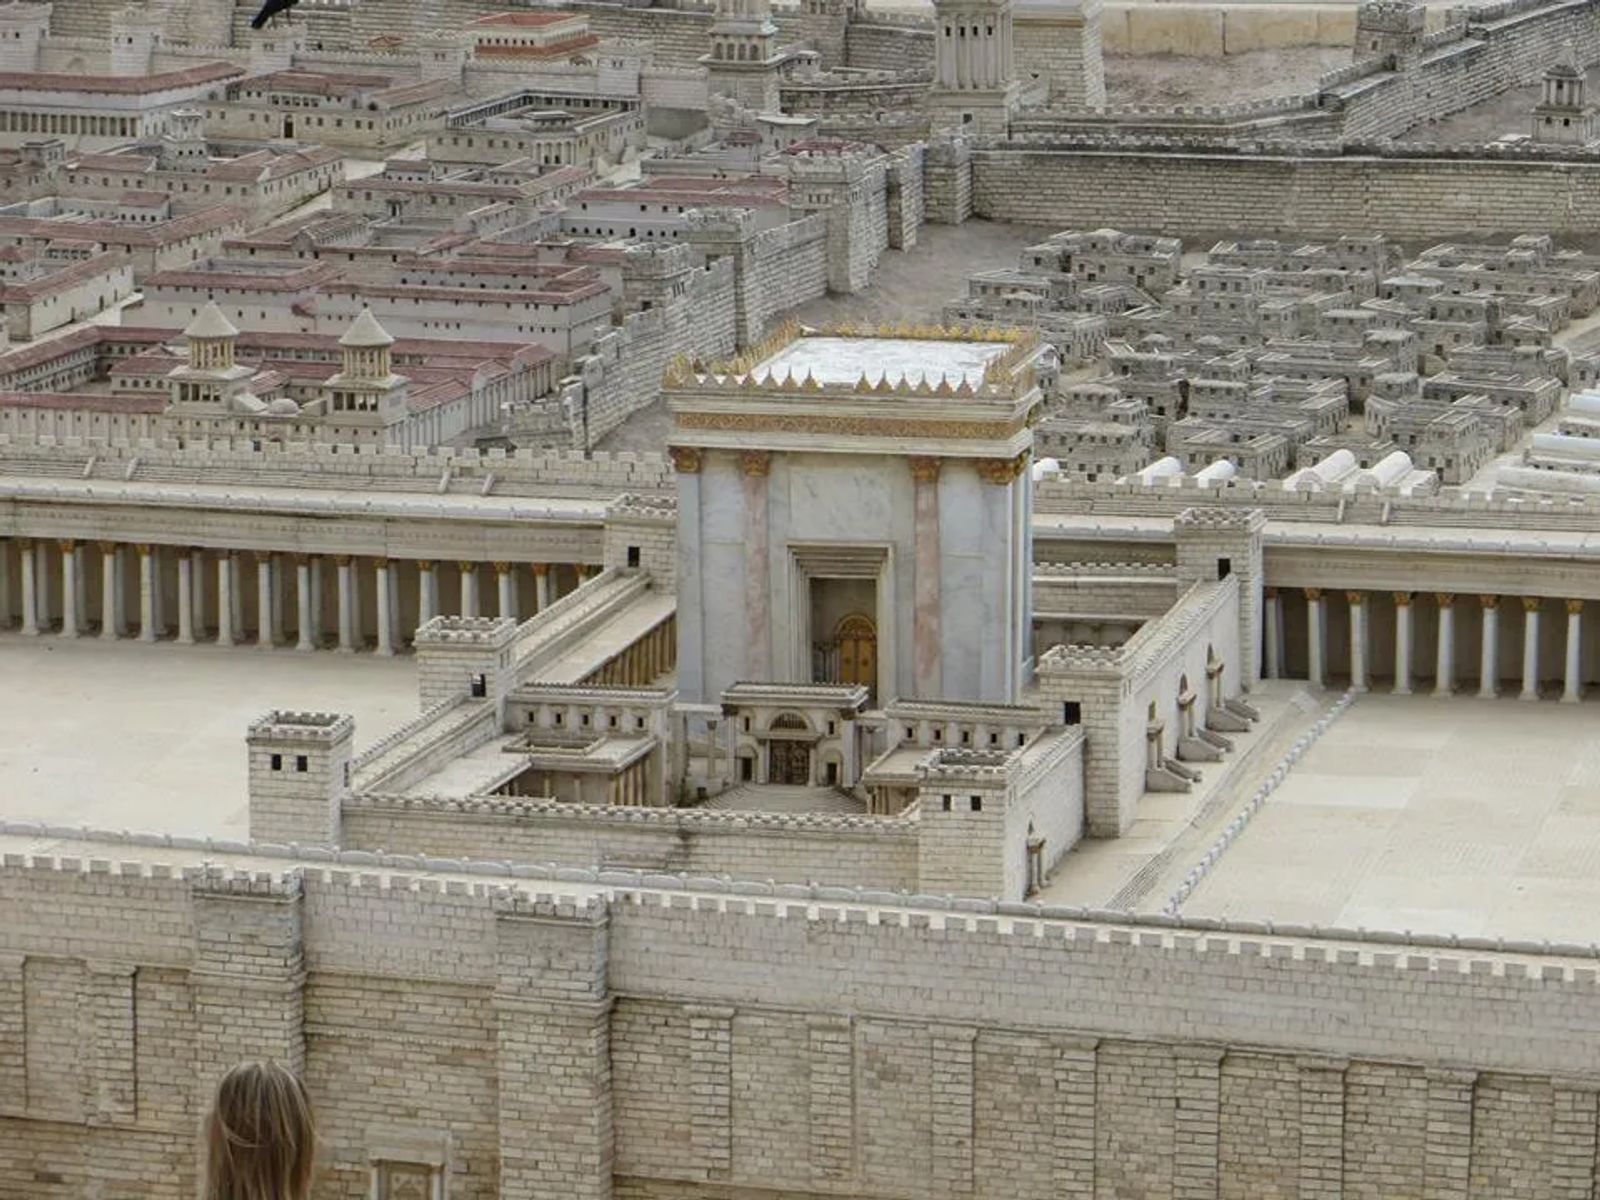 Top 25 Things To See in Jerusalem -Culture Trekking - #ThingstoseeinJerusalem #Jerusalem #VisitIsrael